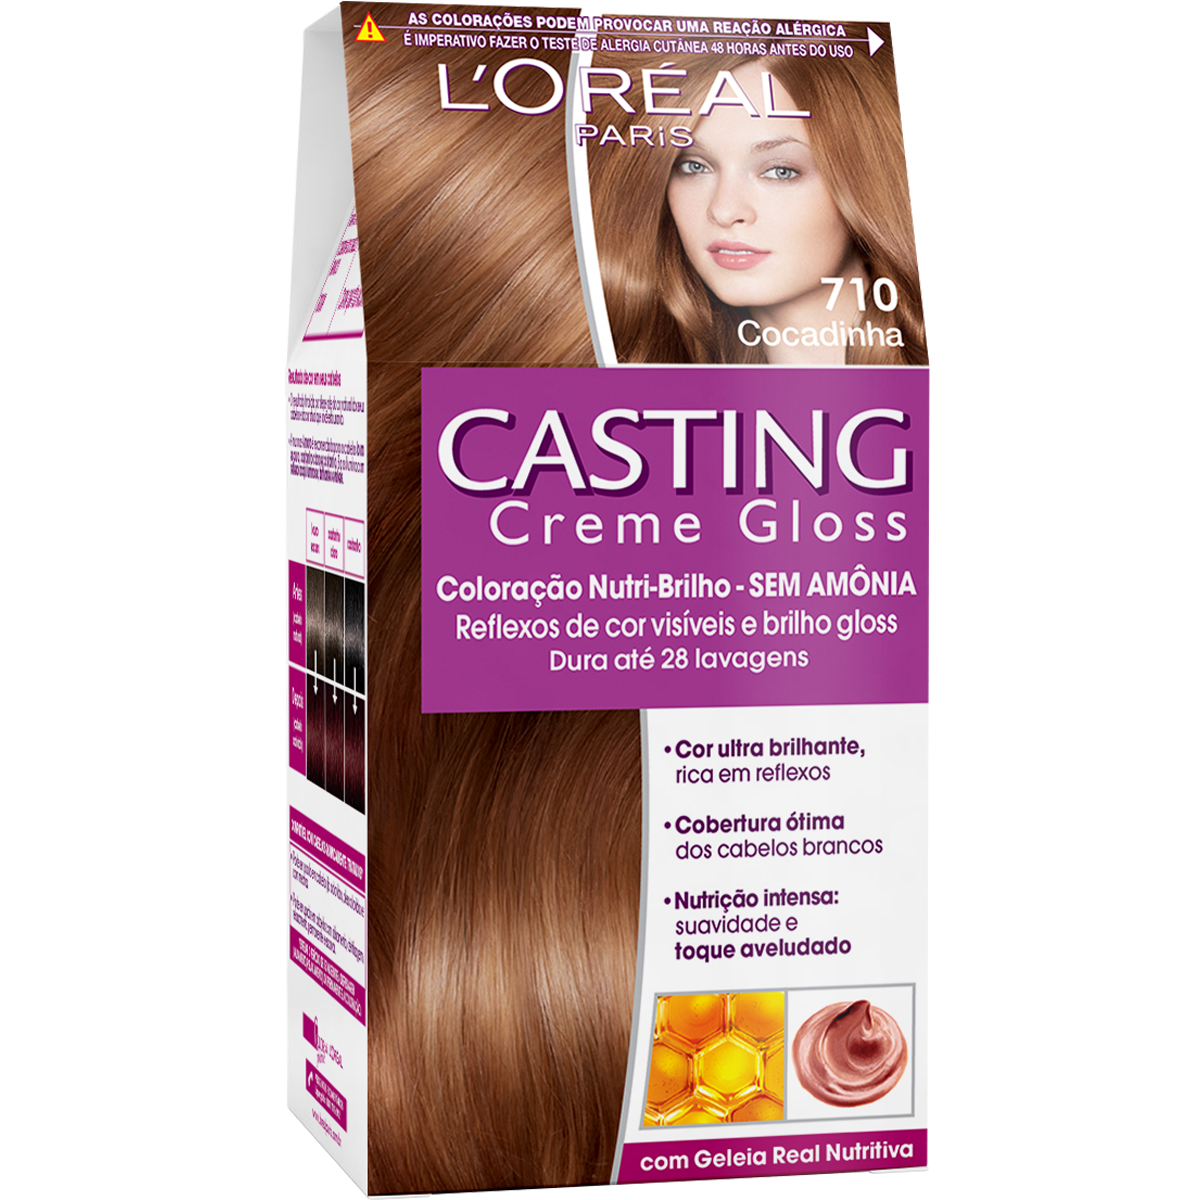 Coloração Permanente Casting Creme Gloss N° 710 Cocadinha L'Oréal 1 Unidade